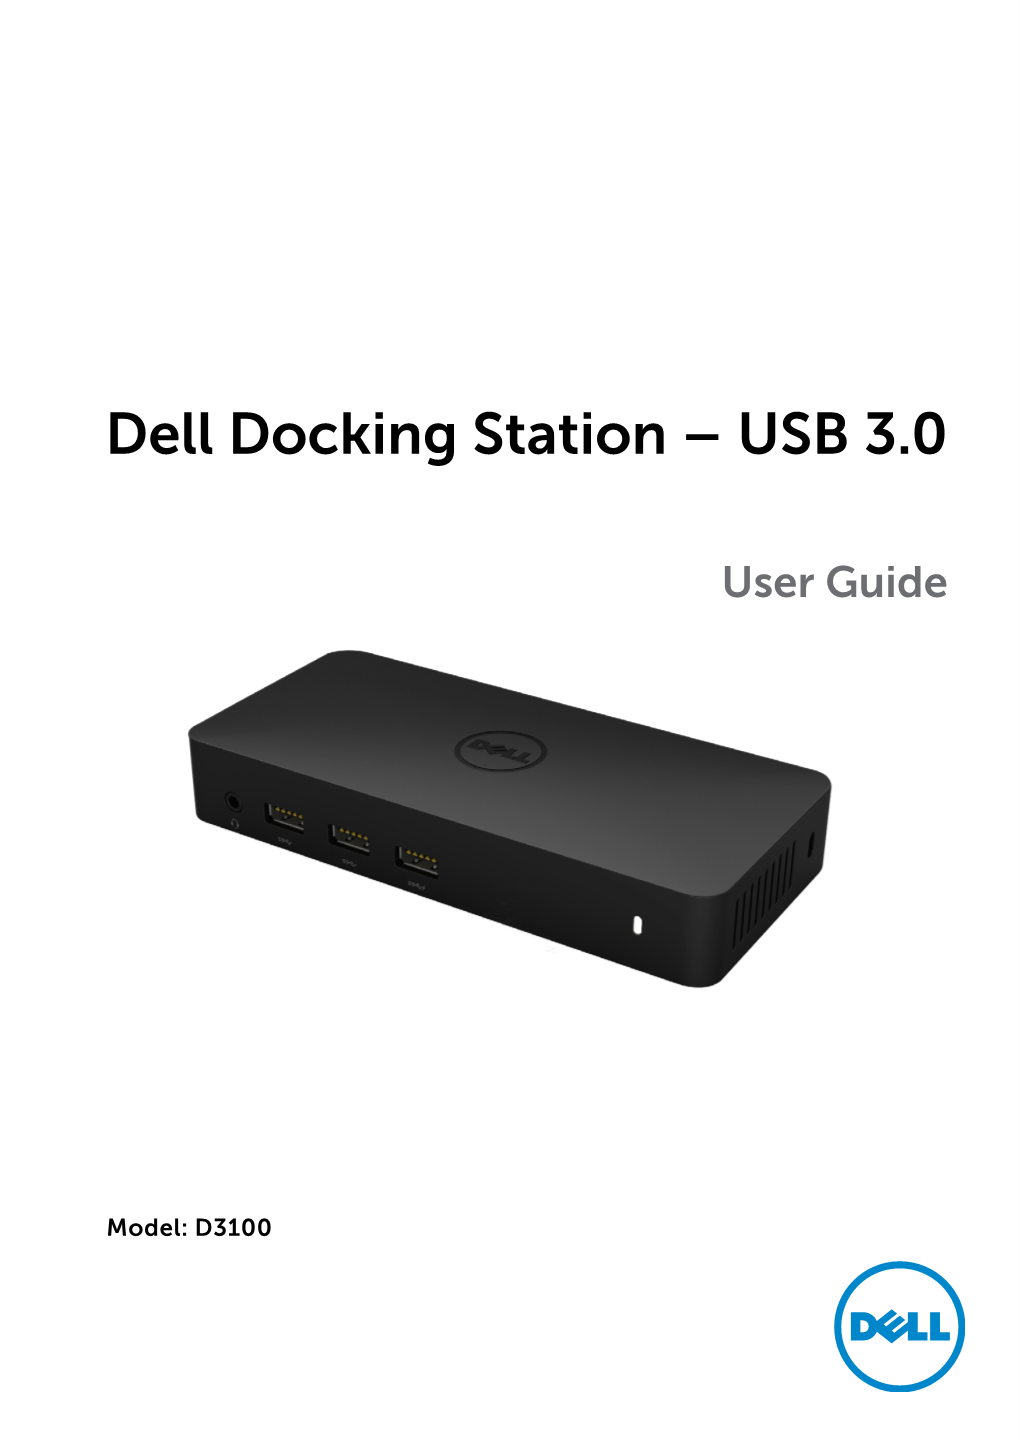 Dell USB3.0 Dock D3100 User Guide